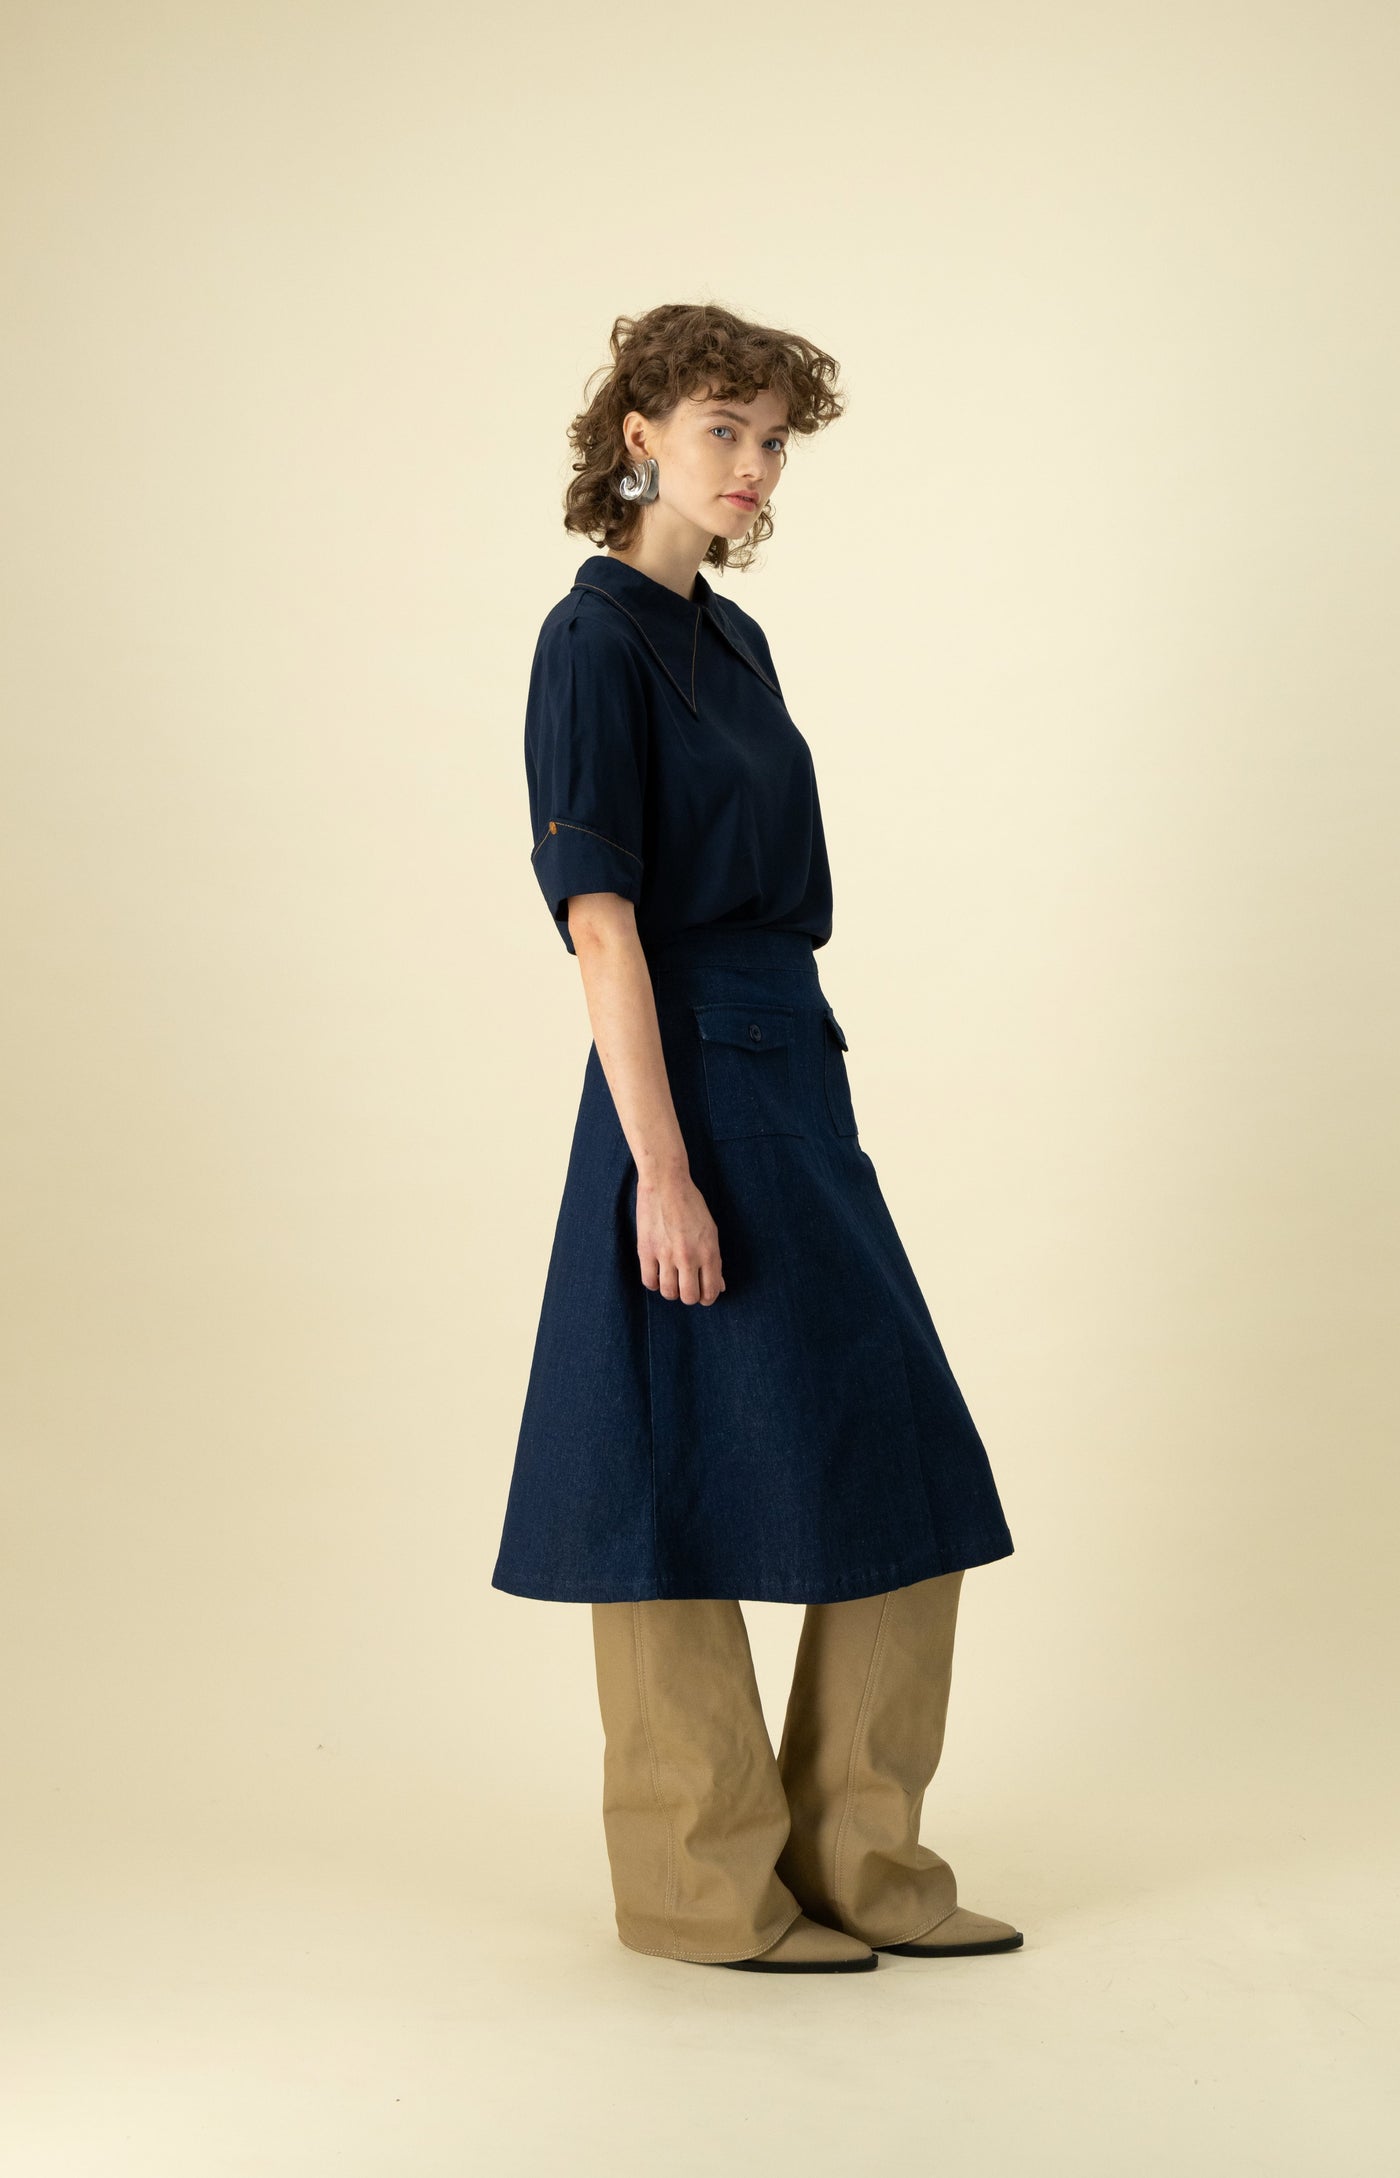 Gallery Pocket Skirt in Blue Denim